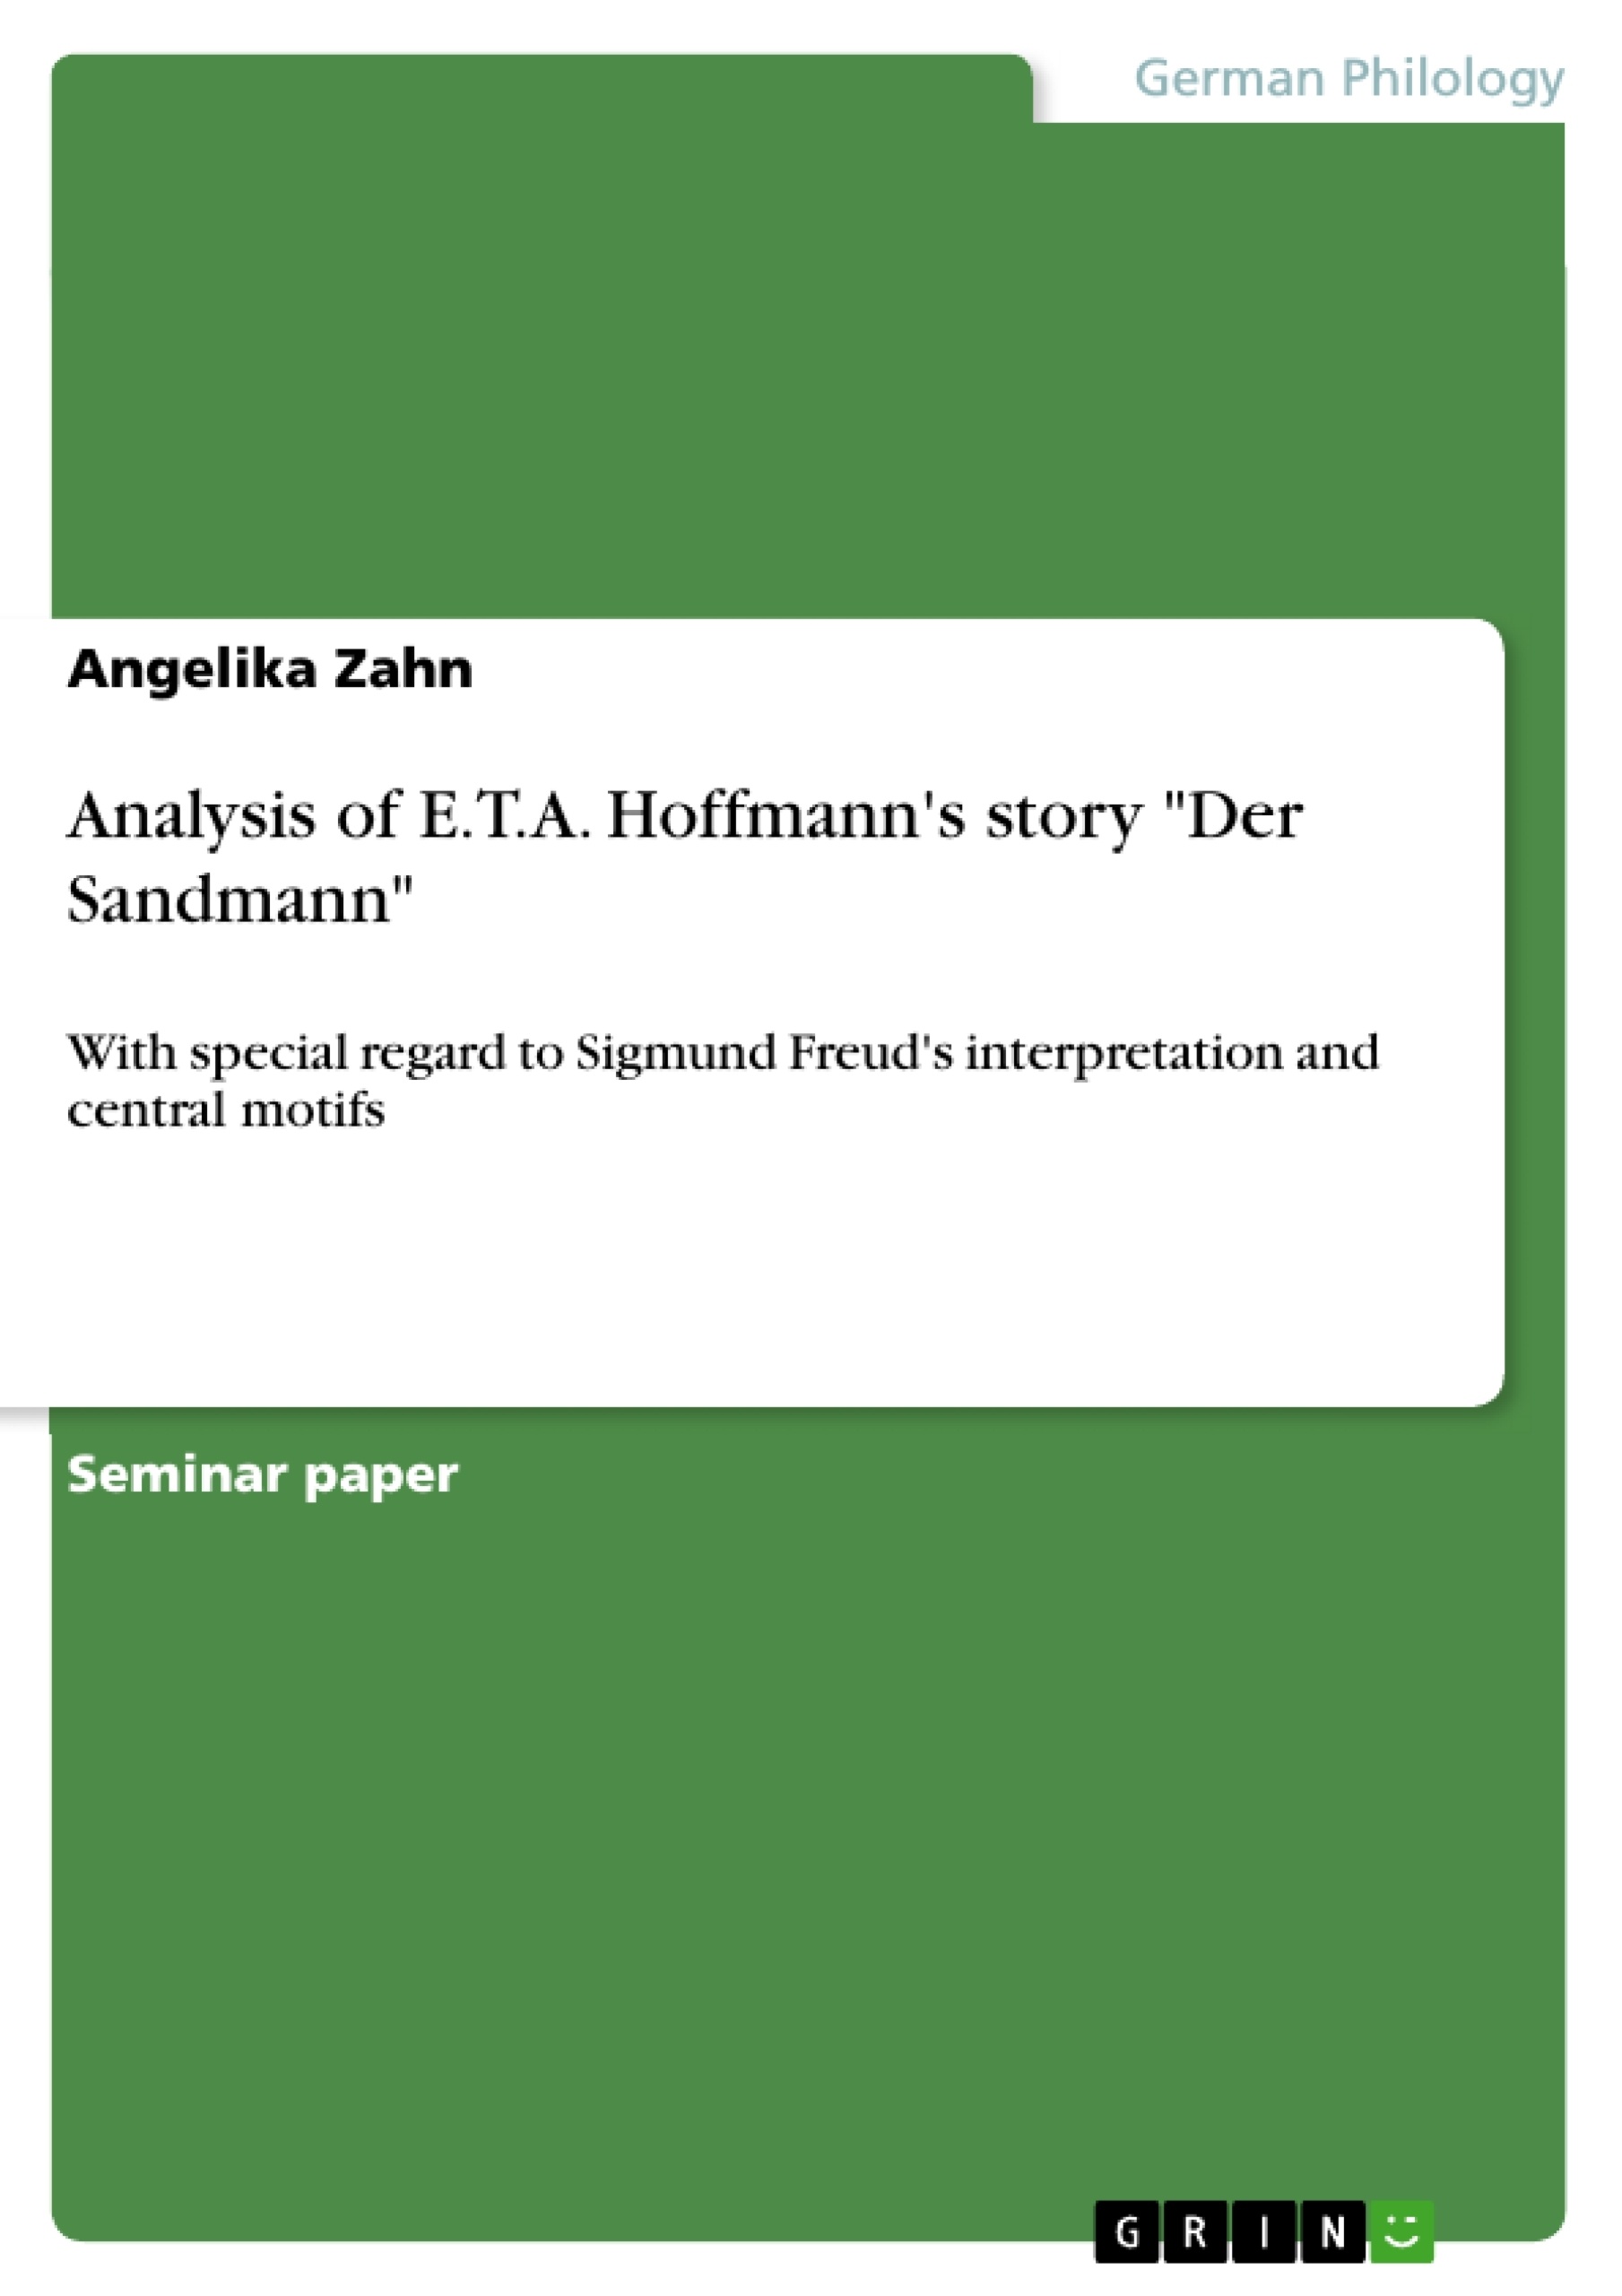 Title: Analysis of E.T.A. Hoffmann's story "Der Sandmann"